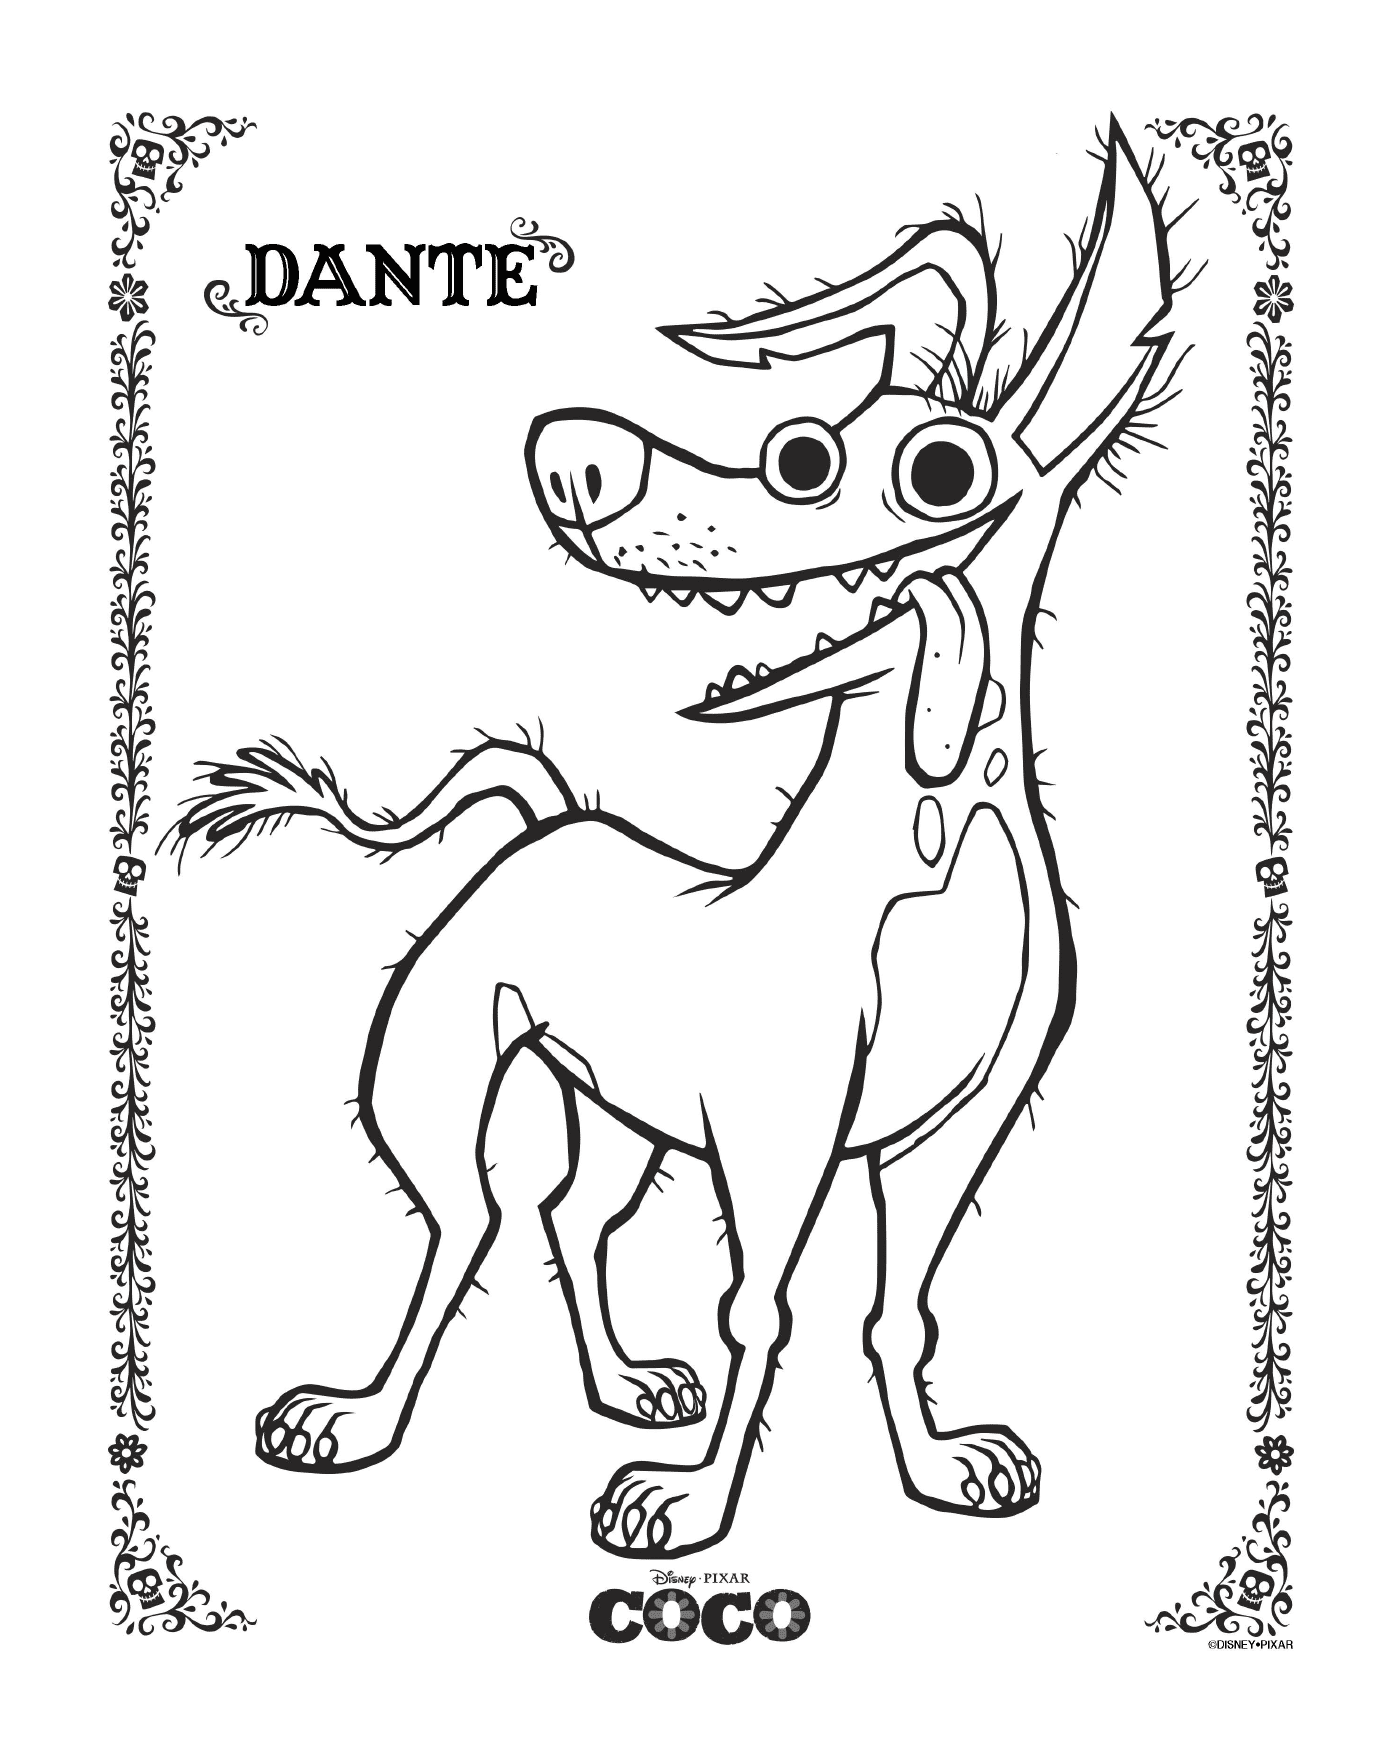  Dante 2 in Coco, Disney 